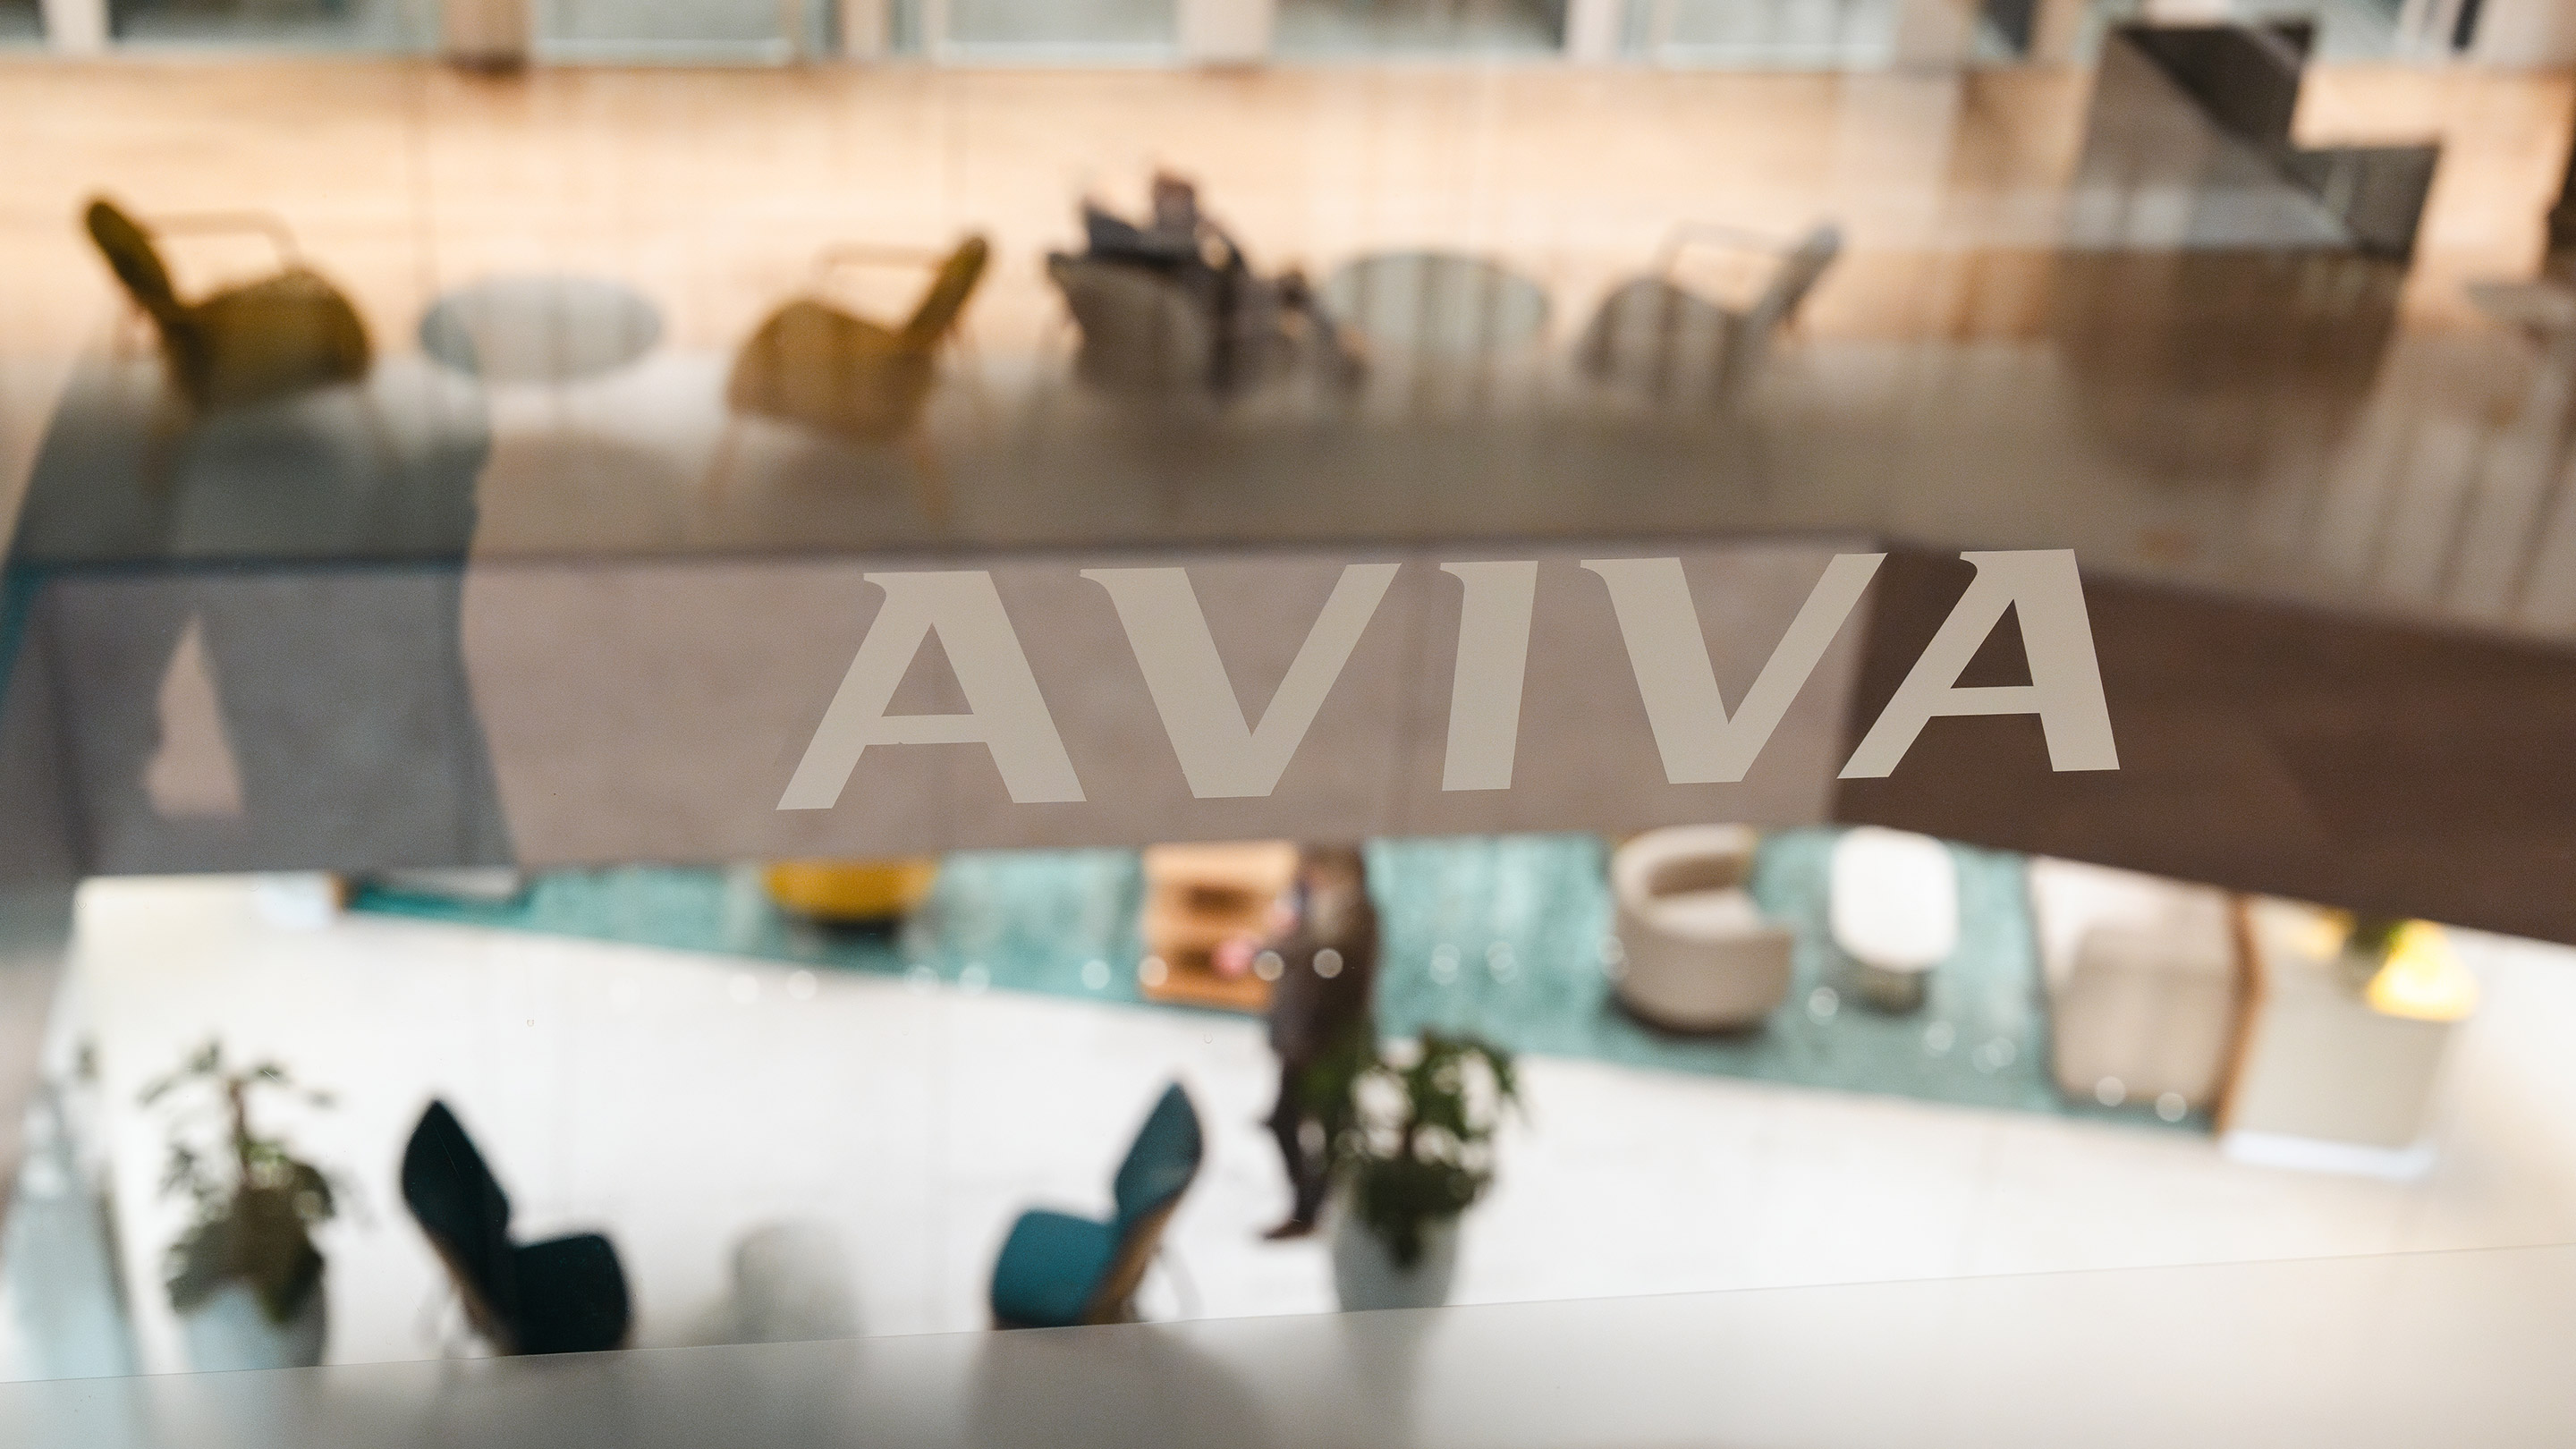 Aviva logo on glass door